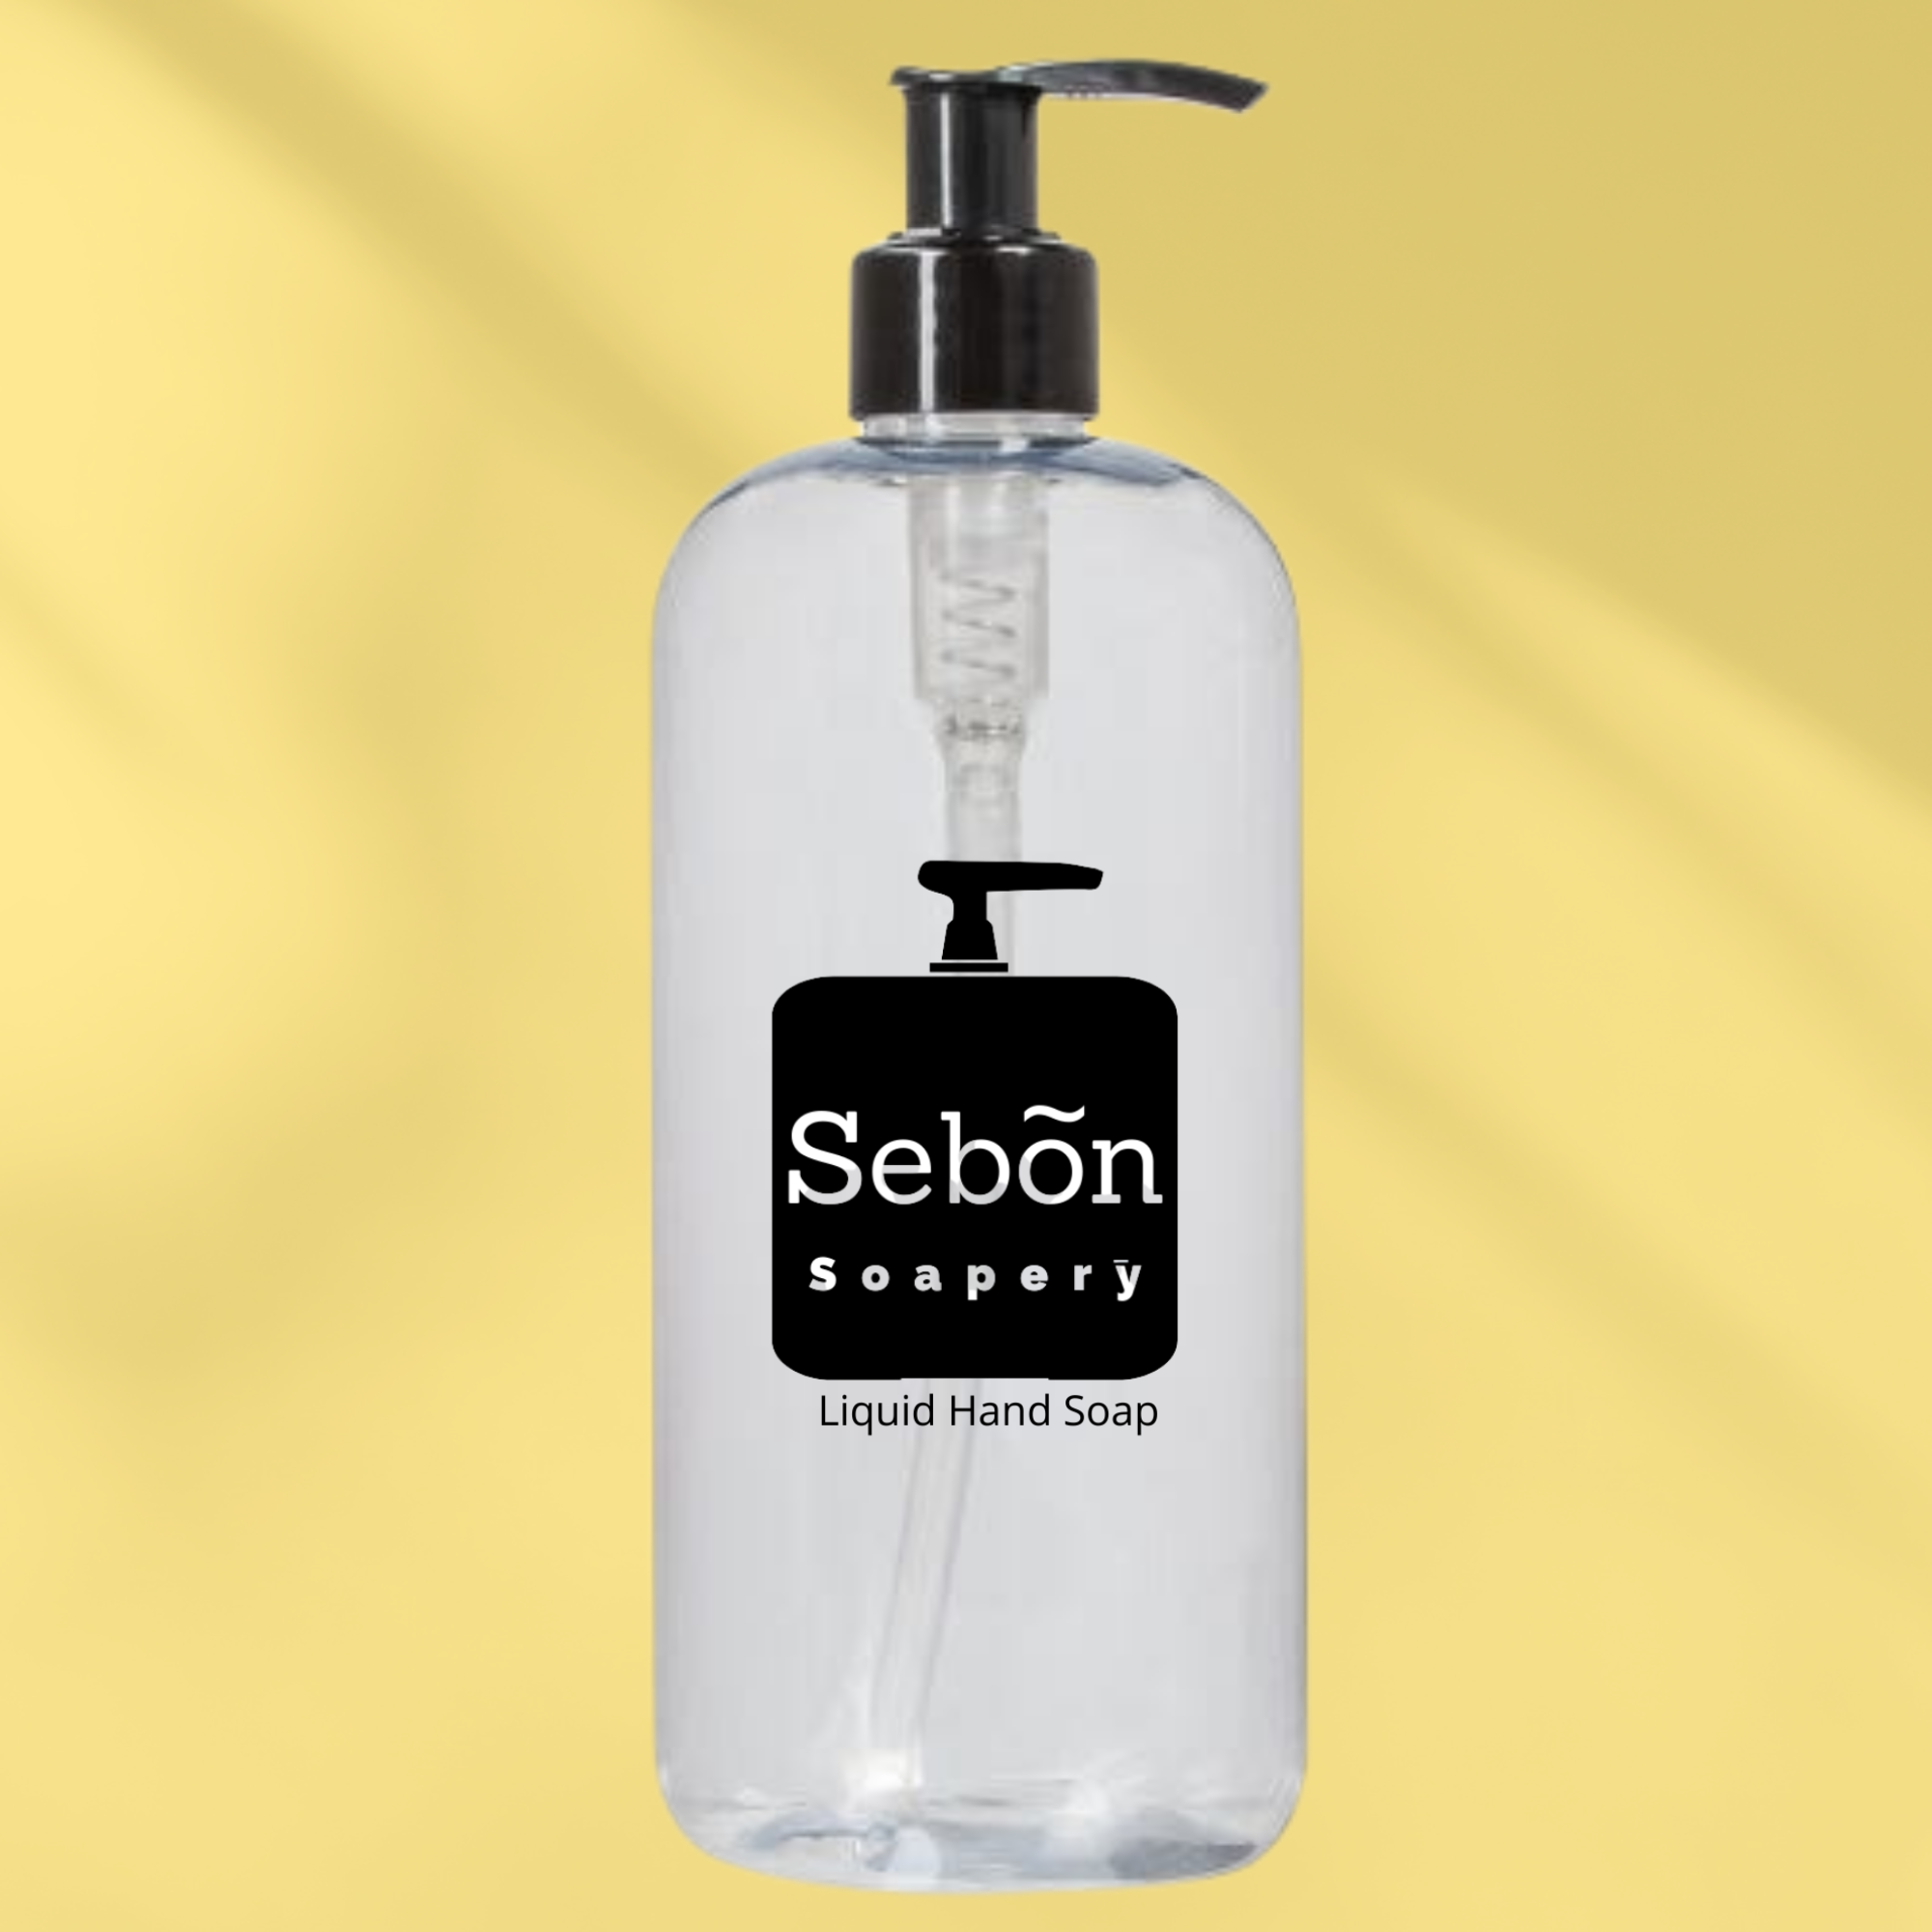 Sebon Peach & Orange Blossom Scented Liquid Hand Soap with Olive Oil